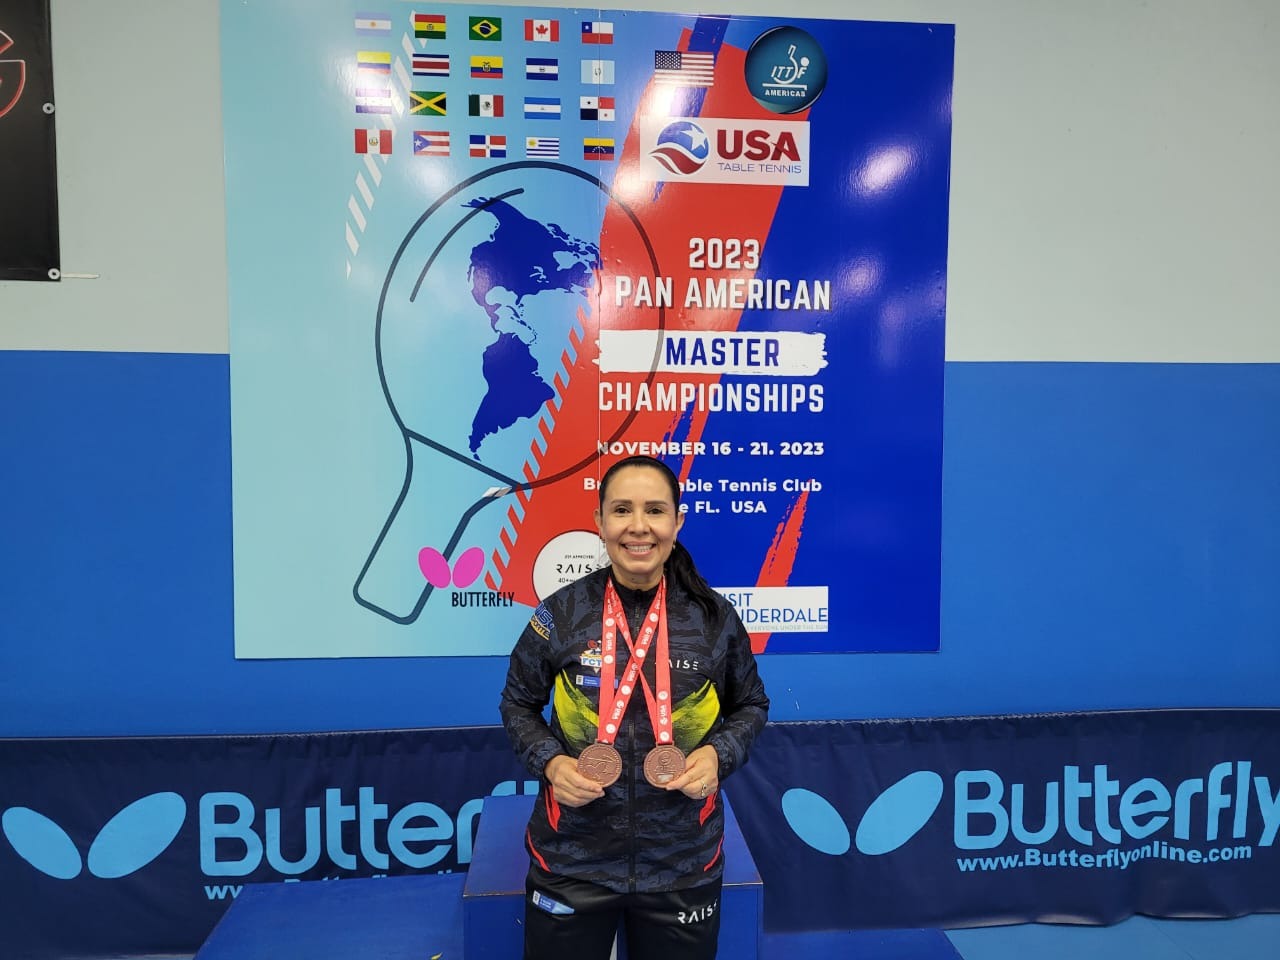 Profesora Mariela Díaz doble medallista de bronce en el Campeonato Panamericano de tenis de mesa Máster ITTF Américas 2023 - Imagen 1